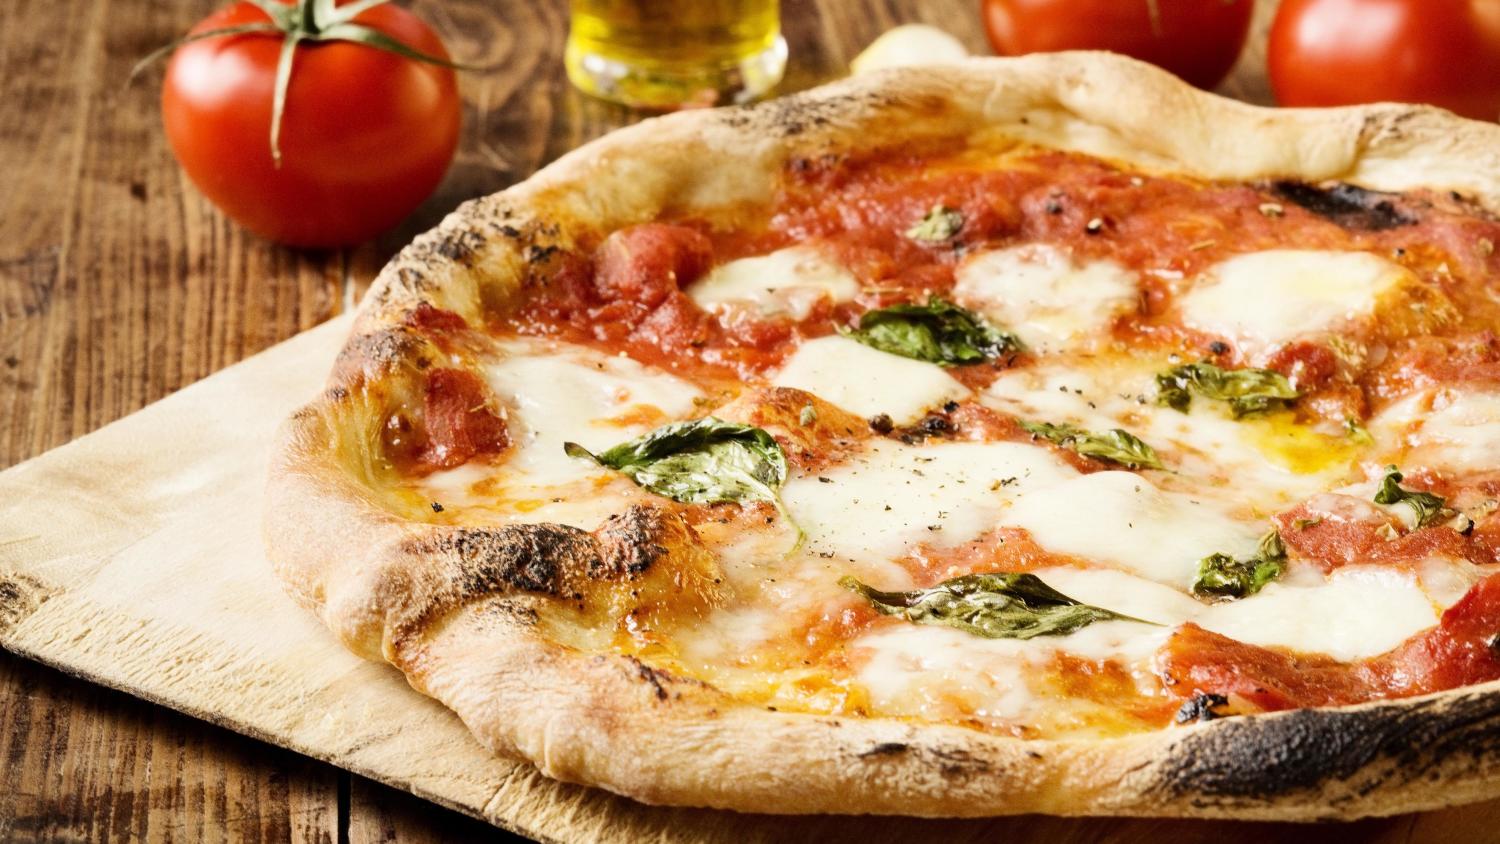 suomalainen pizzeria valittiin maailman 50 parhaan pizzaketjun joukkoon